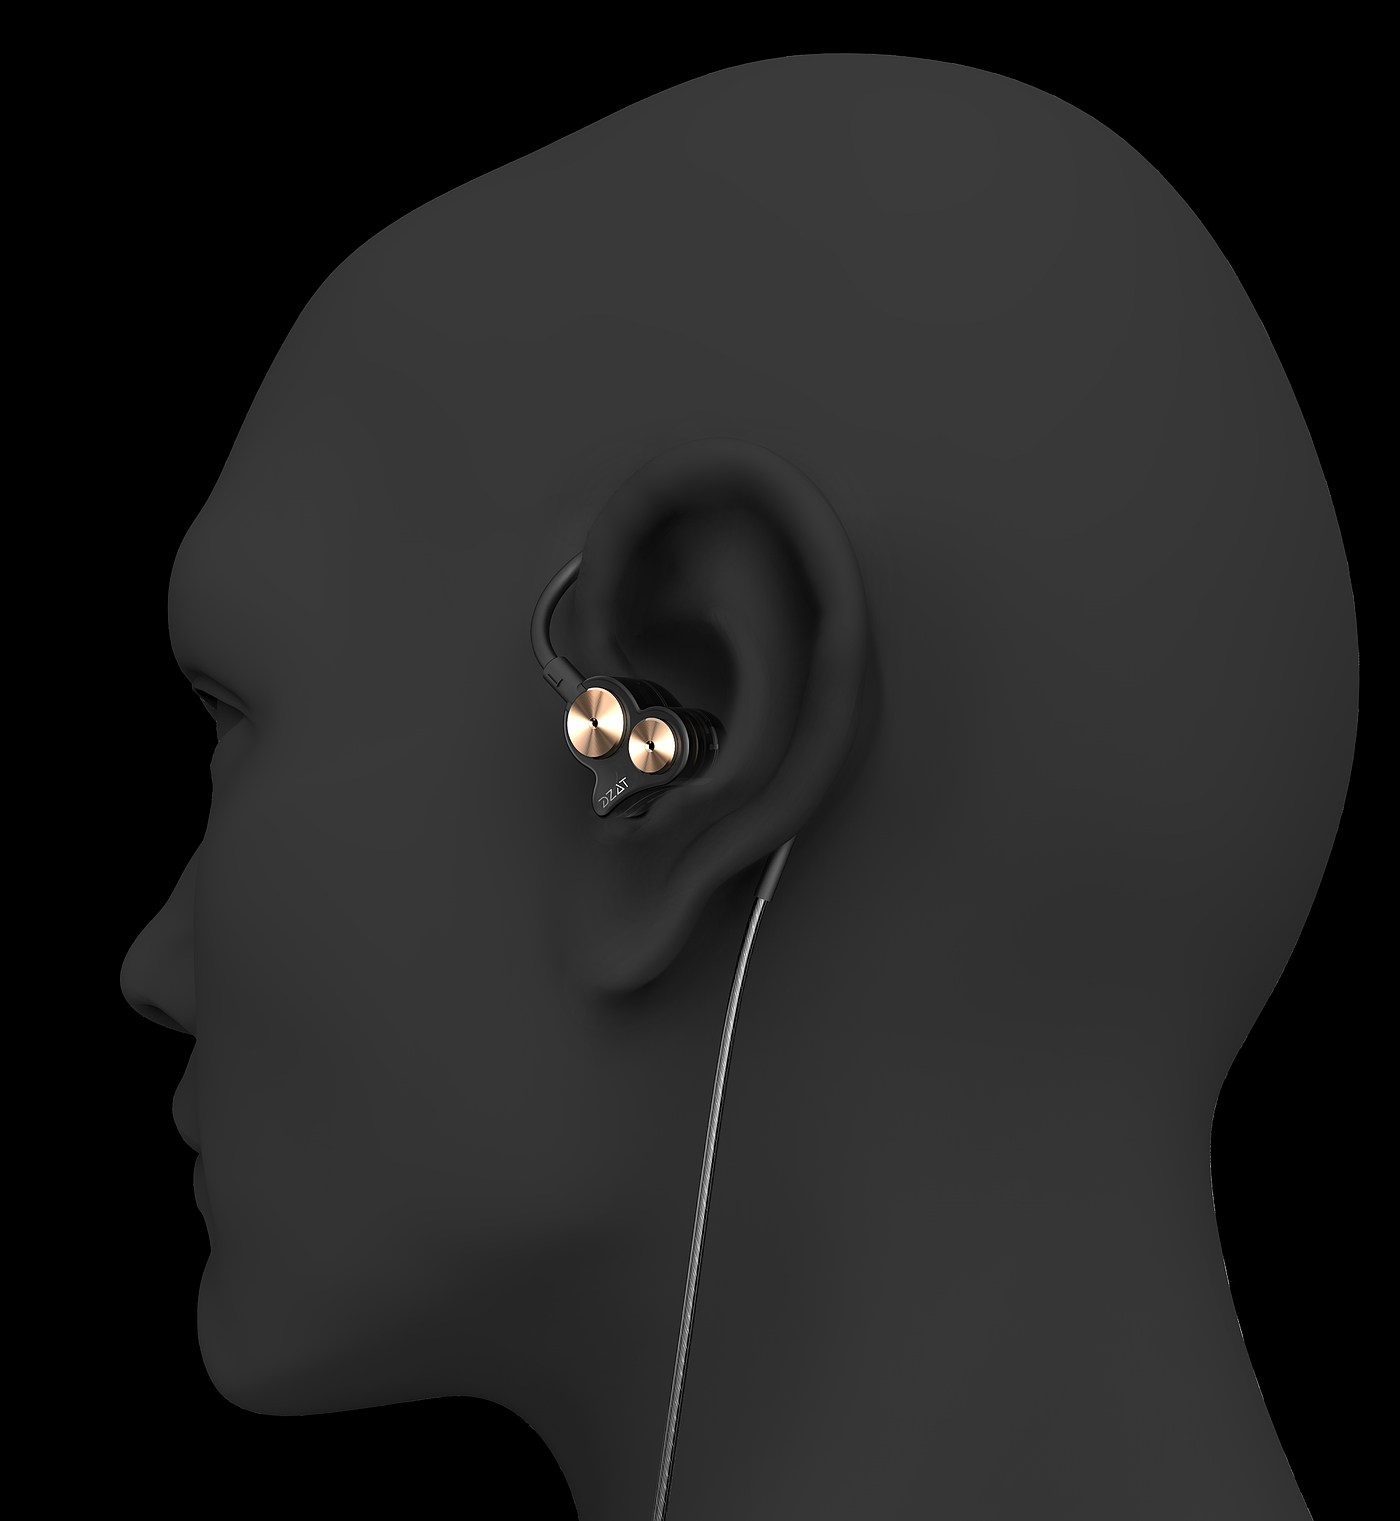 入耳式耳机，被动降噪，双动圈，HIFI耳机，耳挂式耳机，概念耳机设计，